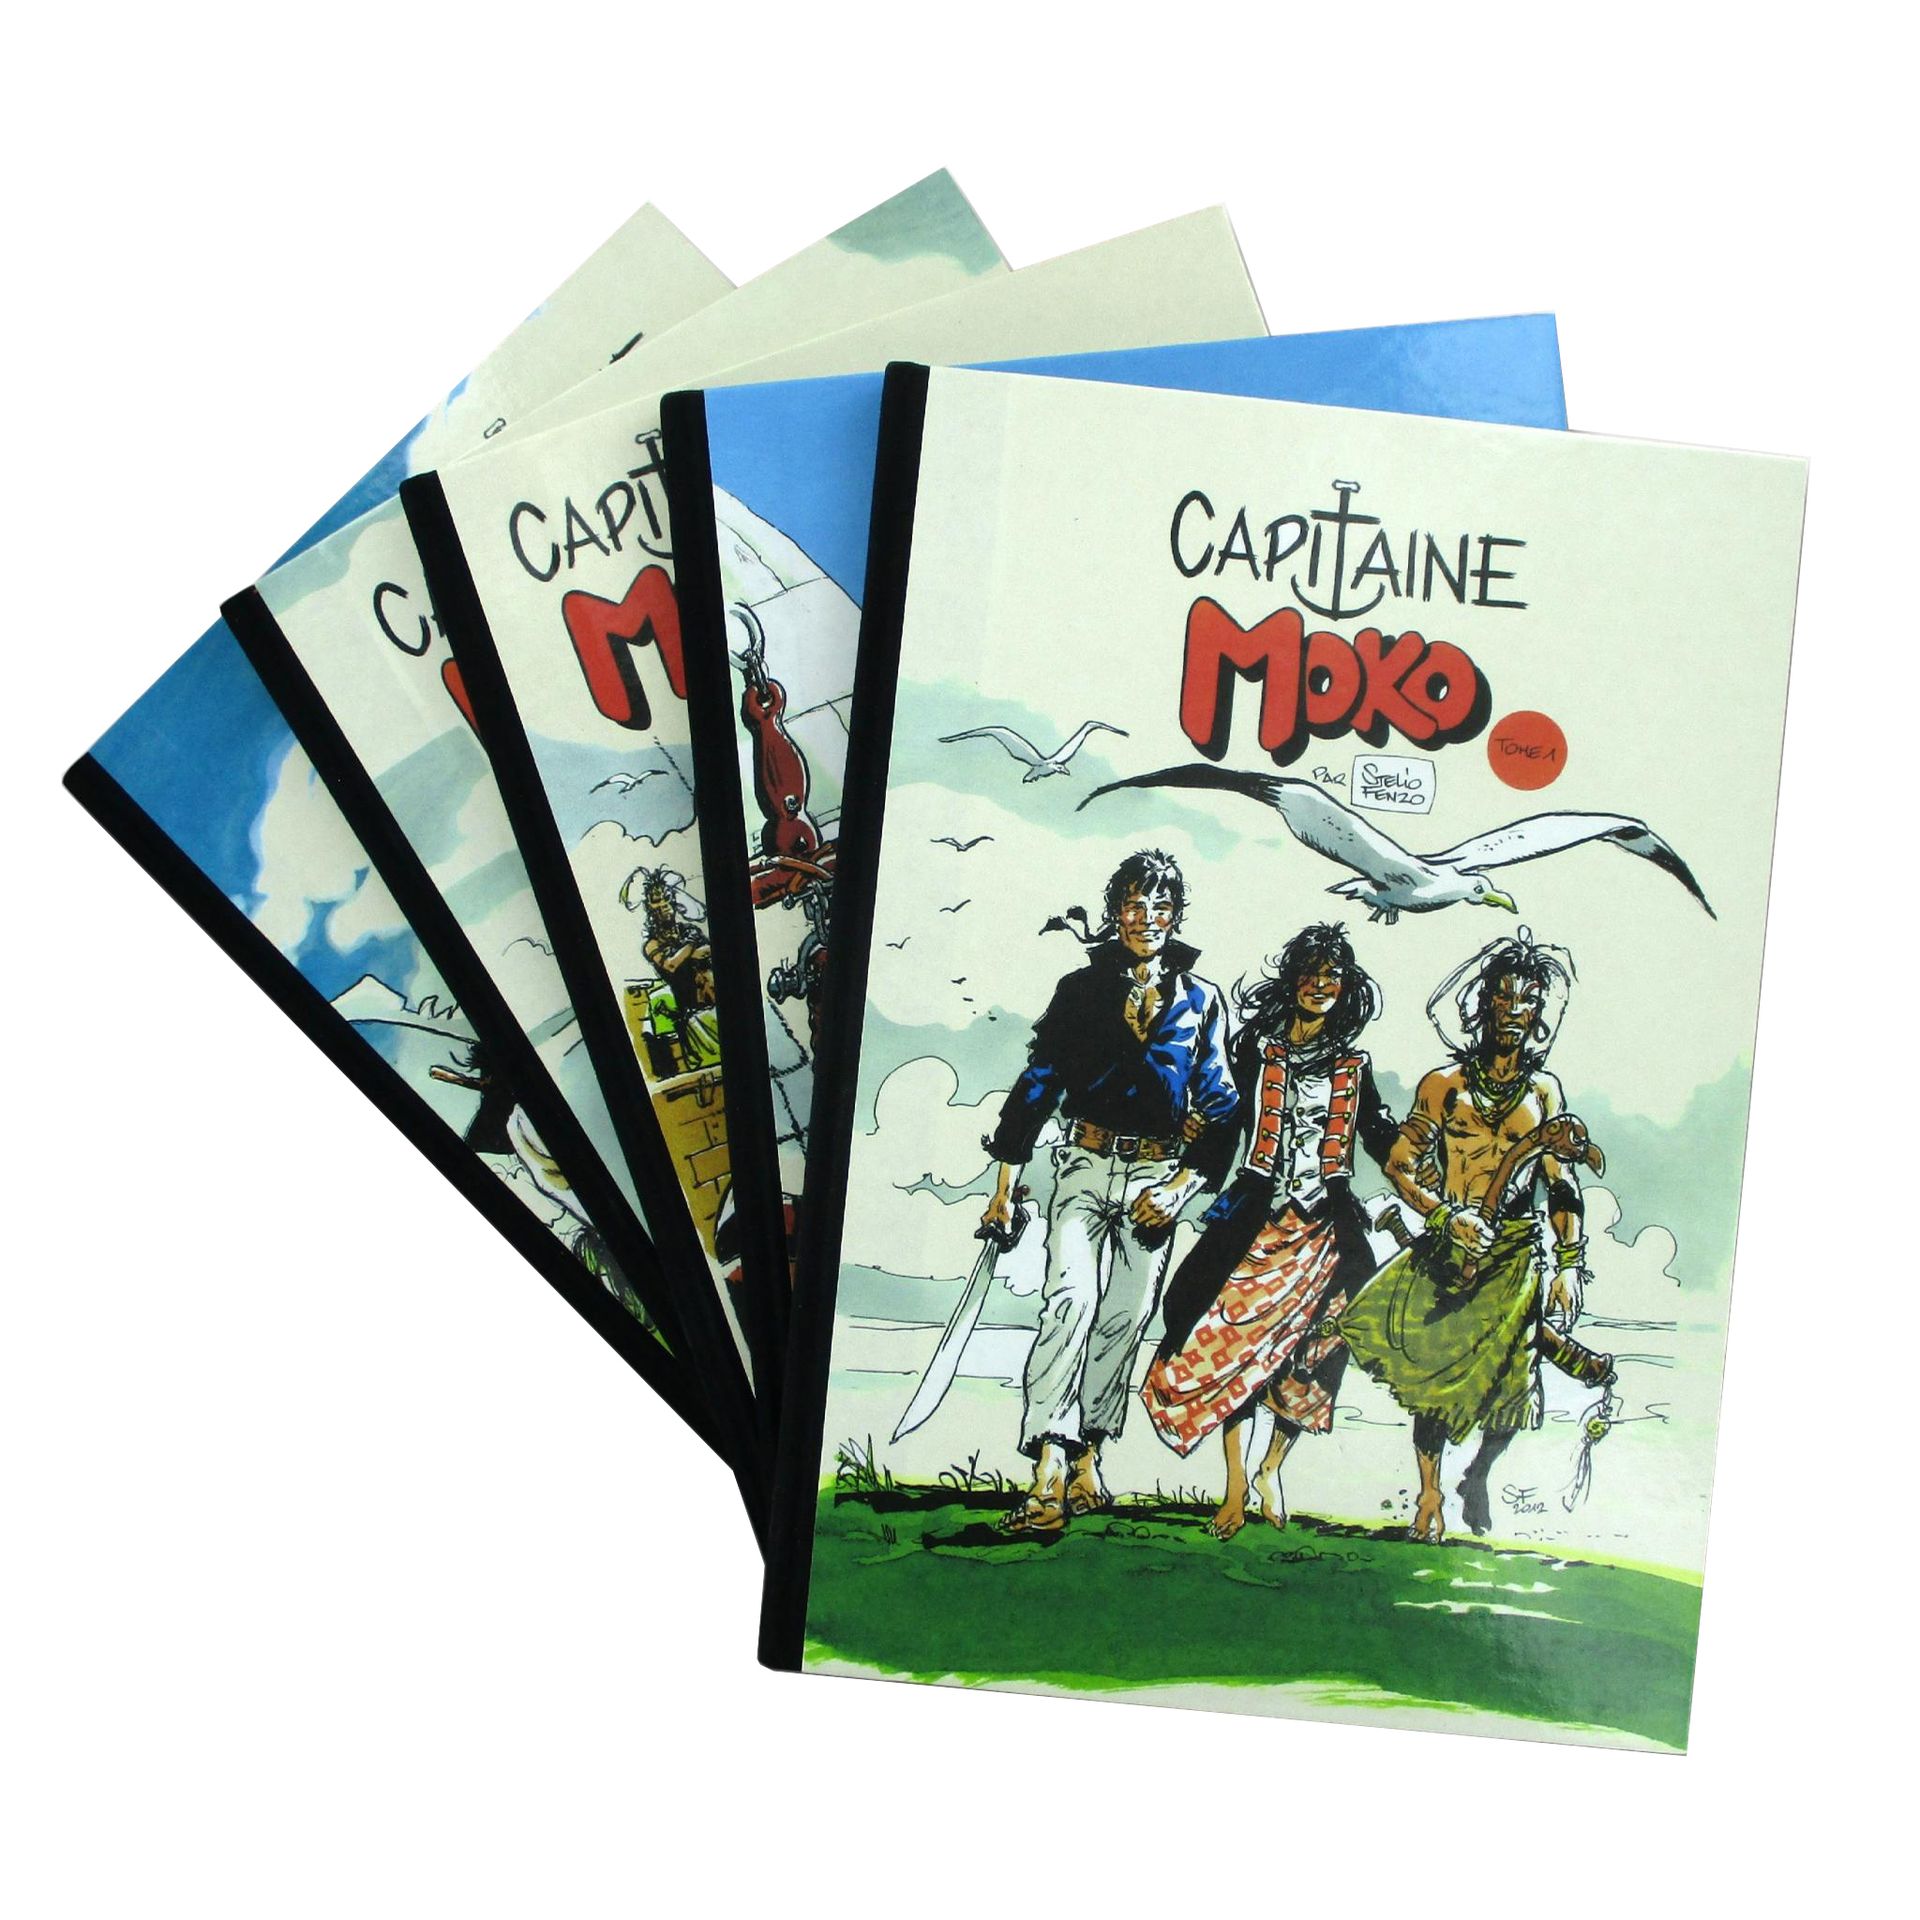 Null FENZO - Capitan Moko
Serie completa in 5 volumi corrispondente alla Complet&hellip;